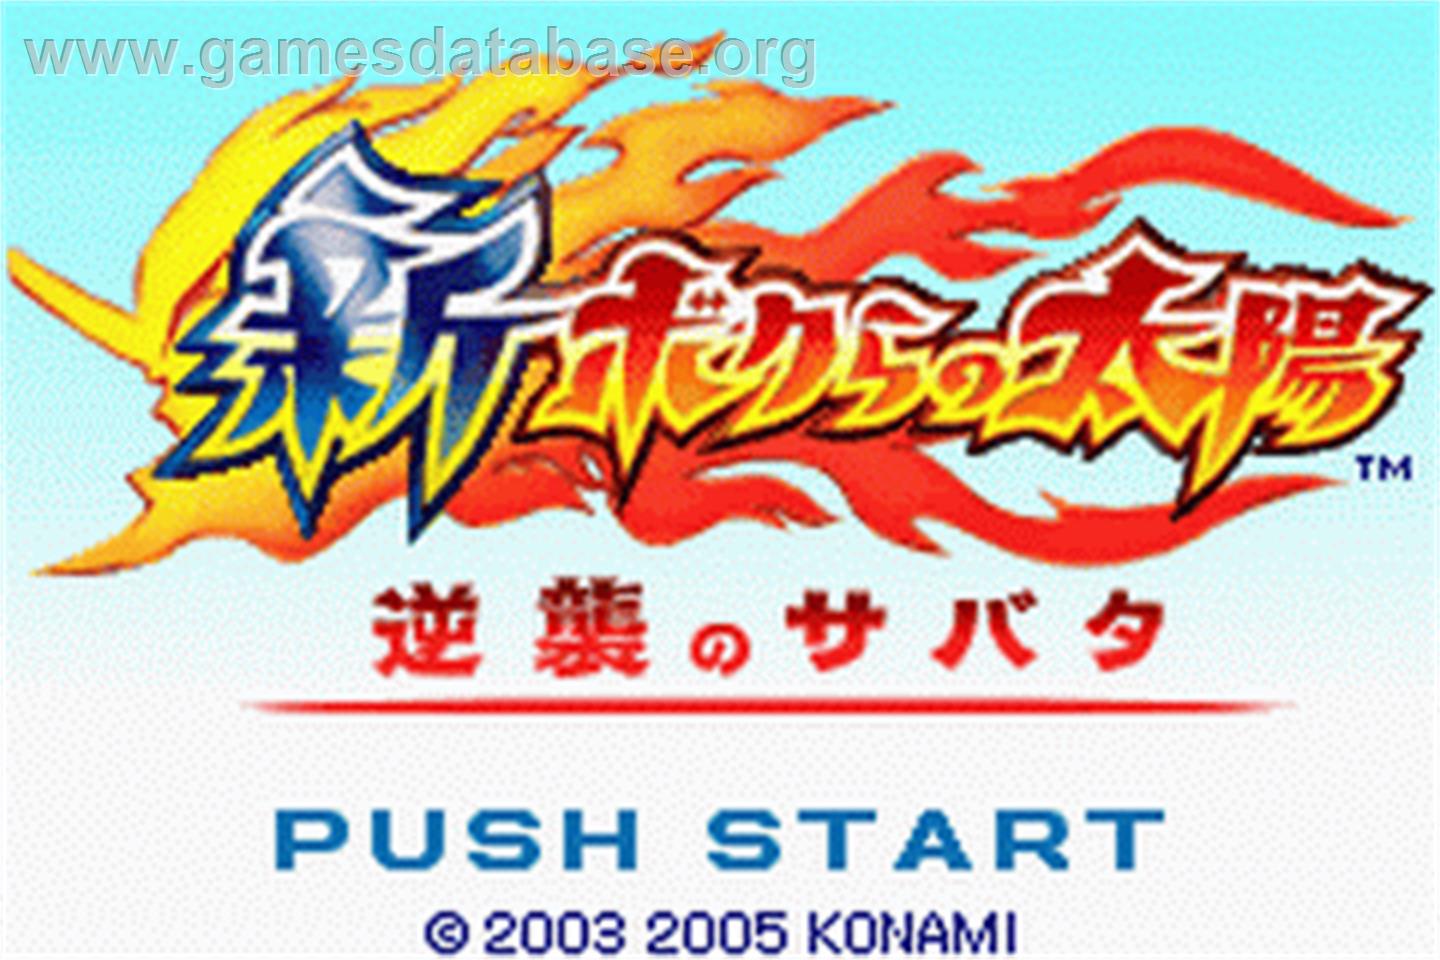 Shin Bokura no Taiyo Gyakushu no Sabata - Nintendo Game Boy Advance - Artwork - Title Screen